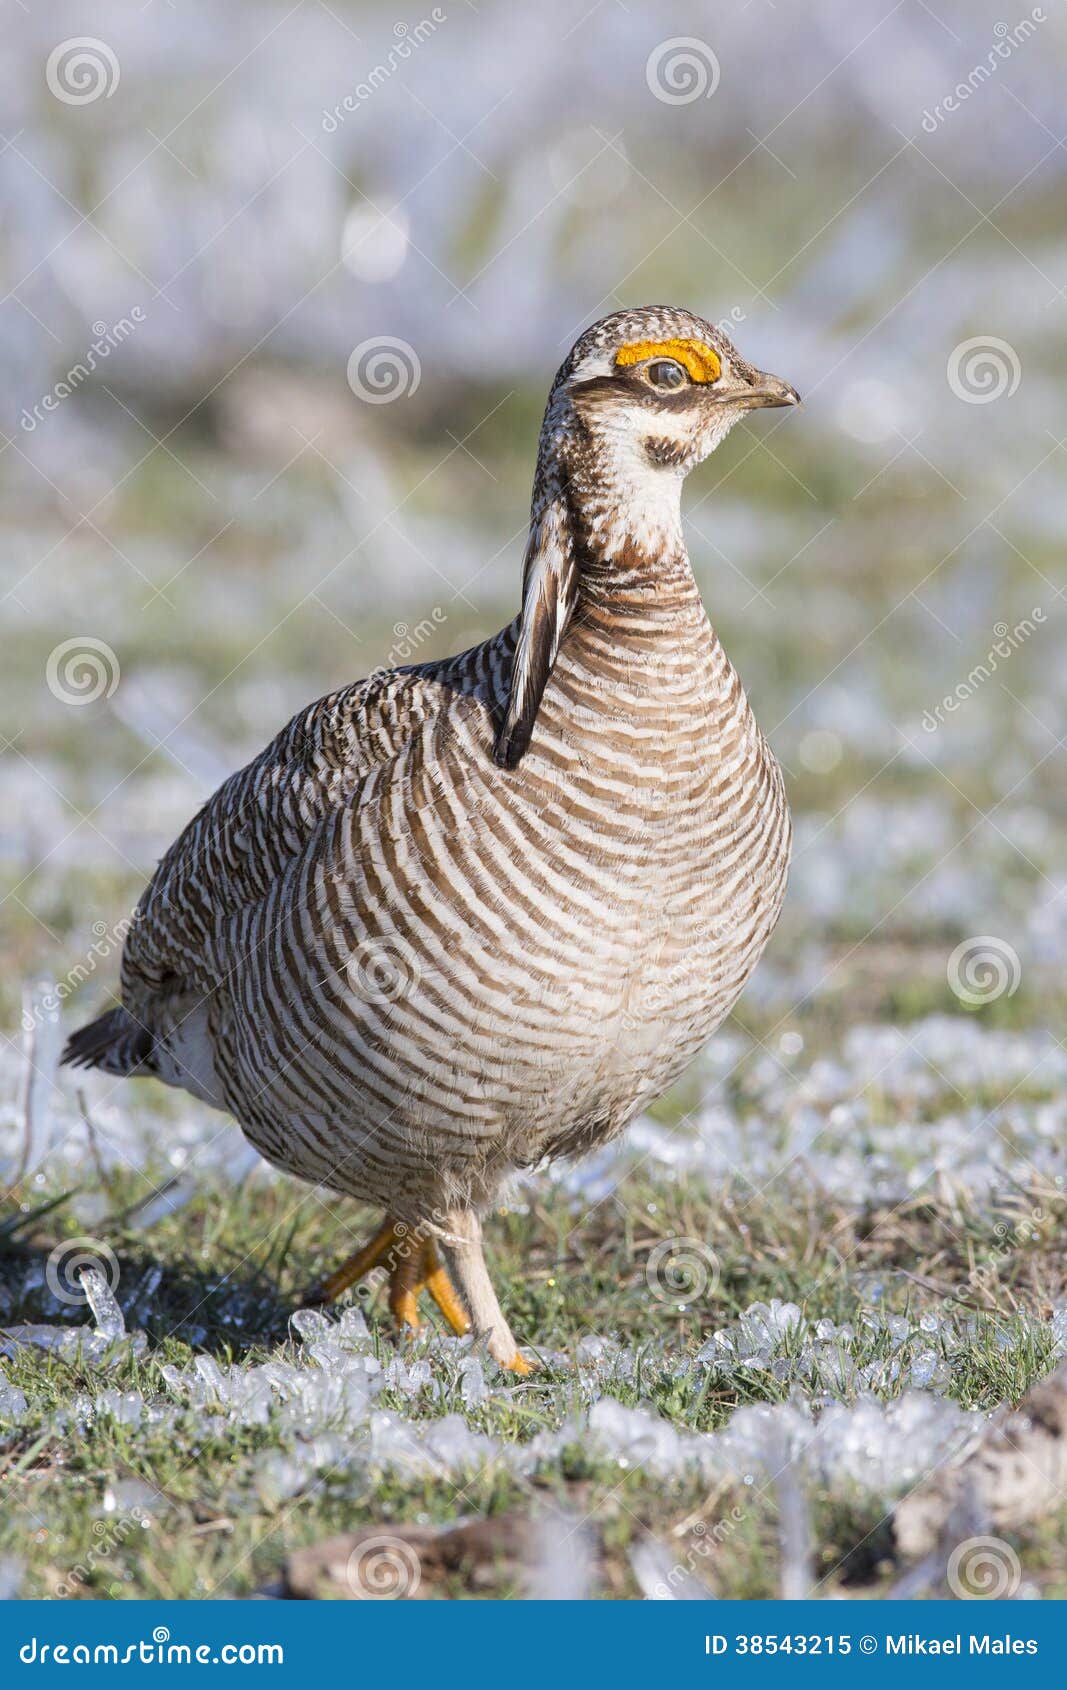 lesser prairie chicken walking in frozen sage